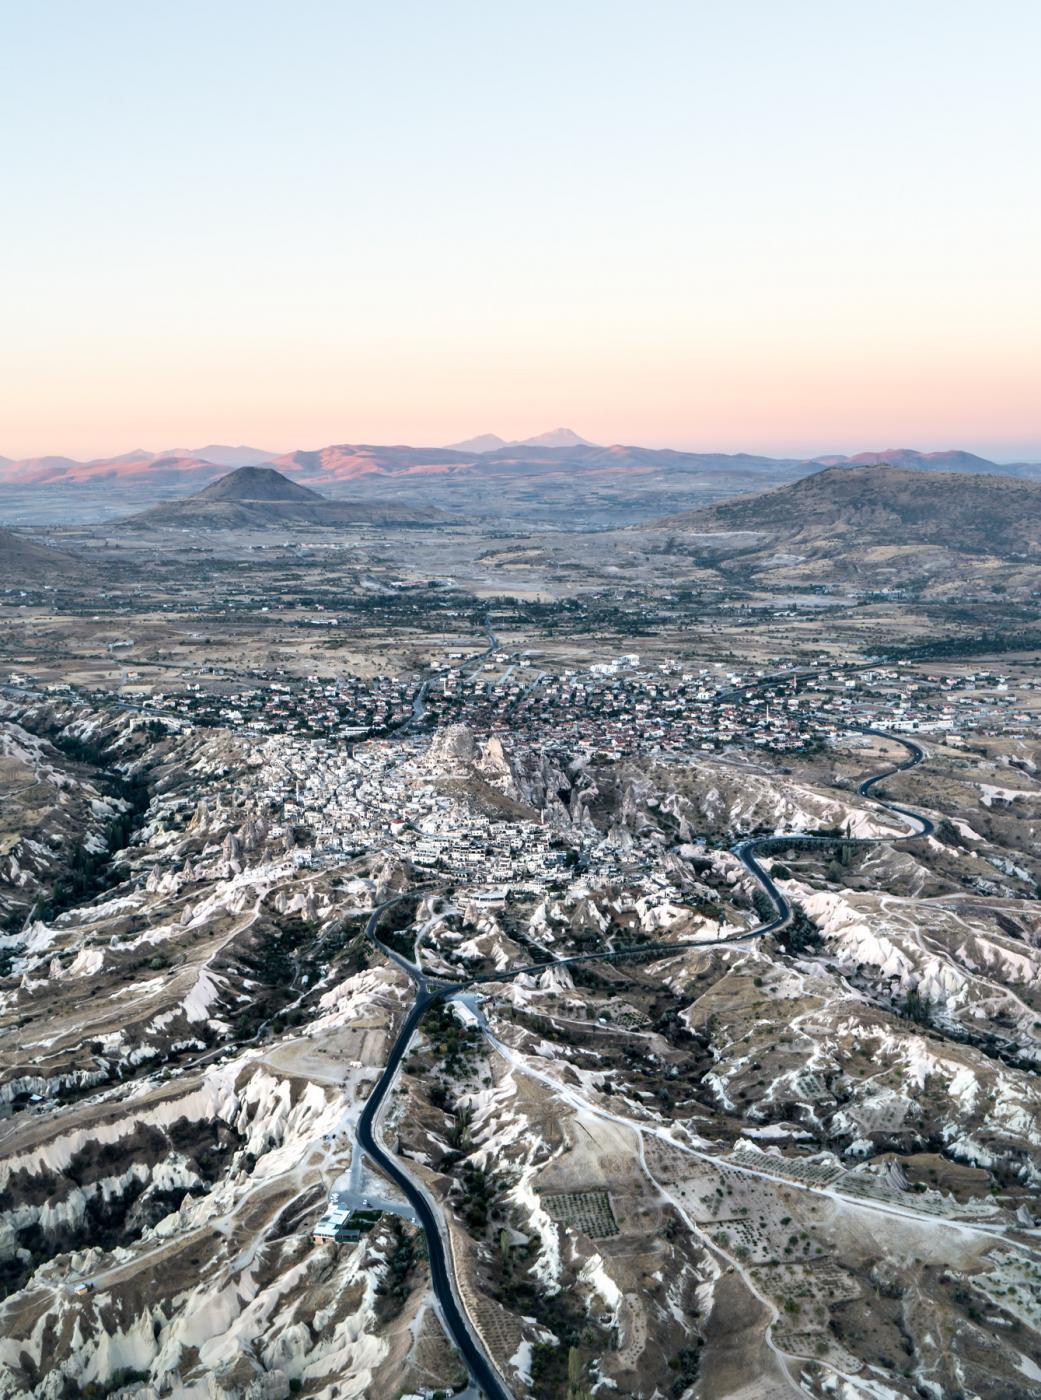 Landscapes of Ortahisar and Uçhisar in Cappadocia, Turkey